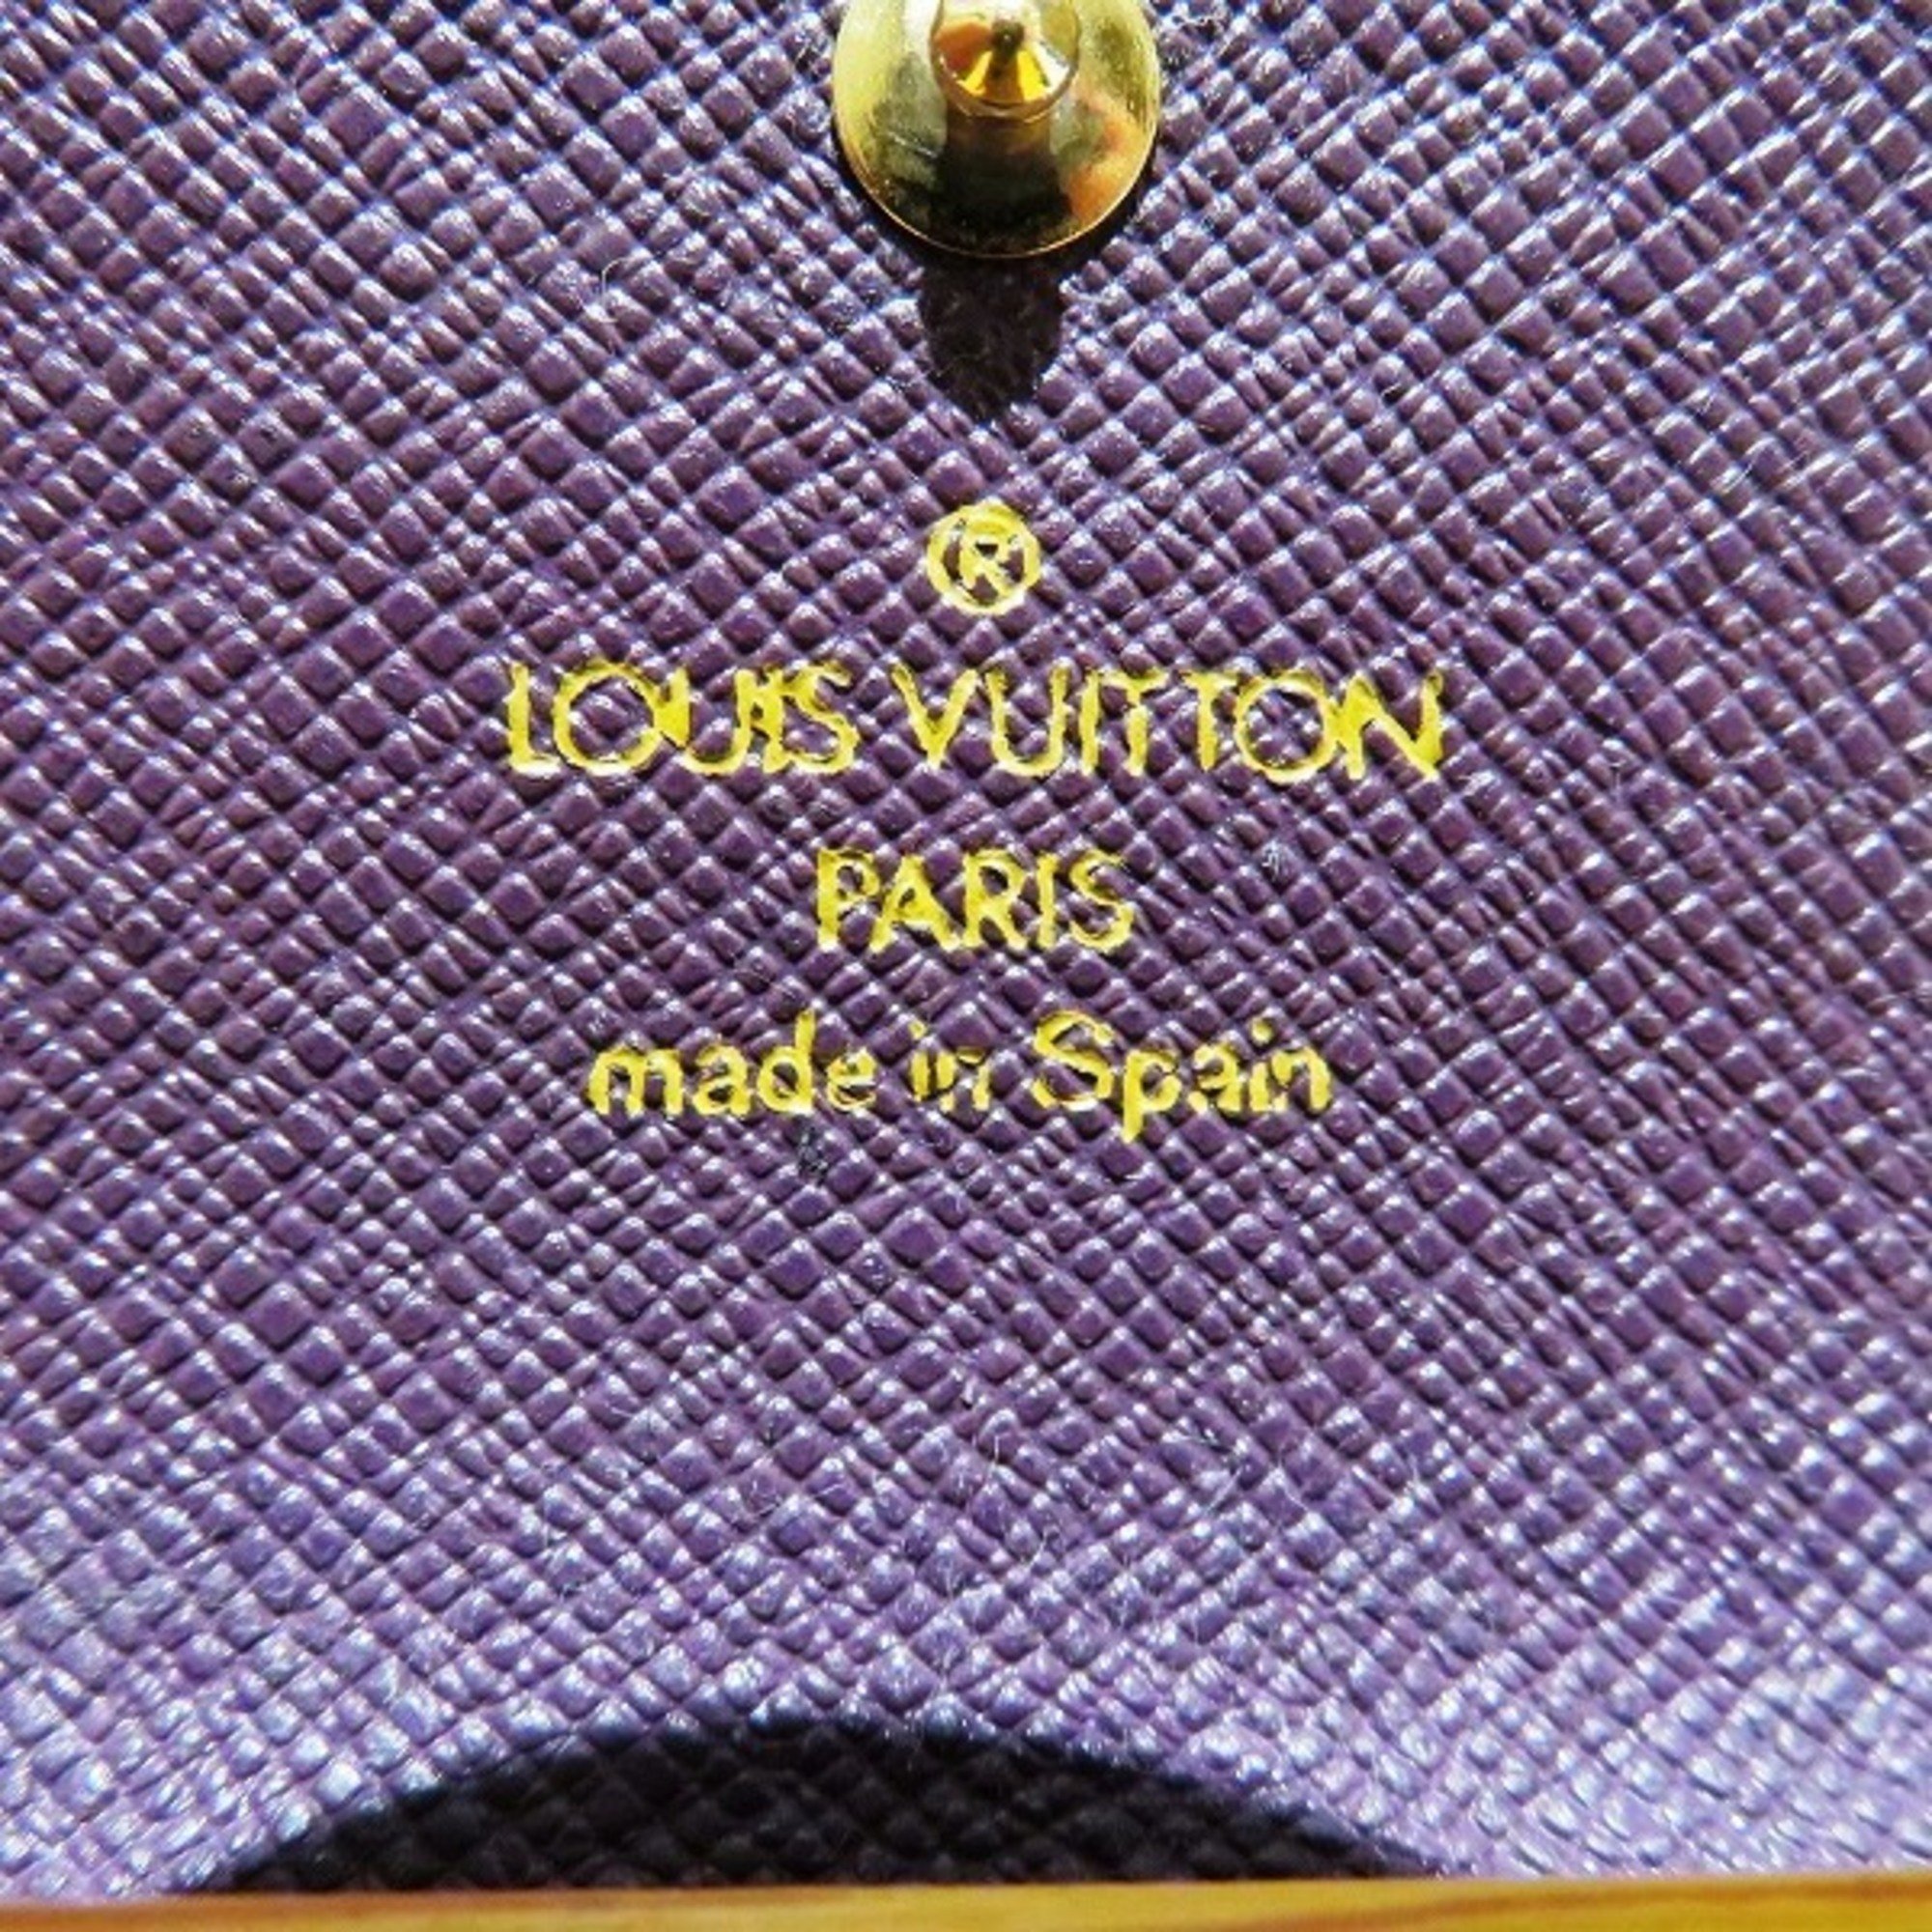 Louis Vuitton Epi Multicle 4 M63829 4-row Brand Accessories Key Case Men's Women's